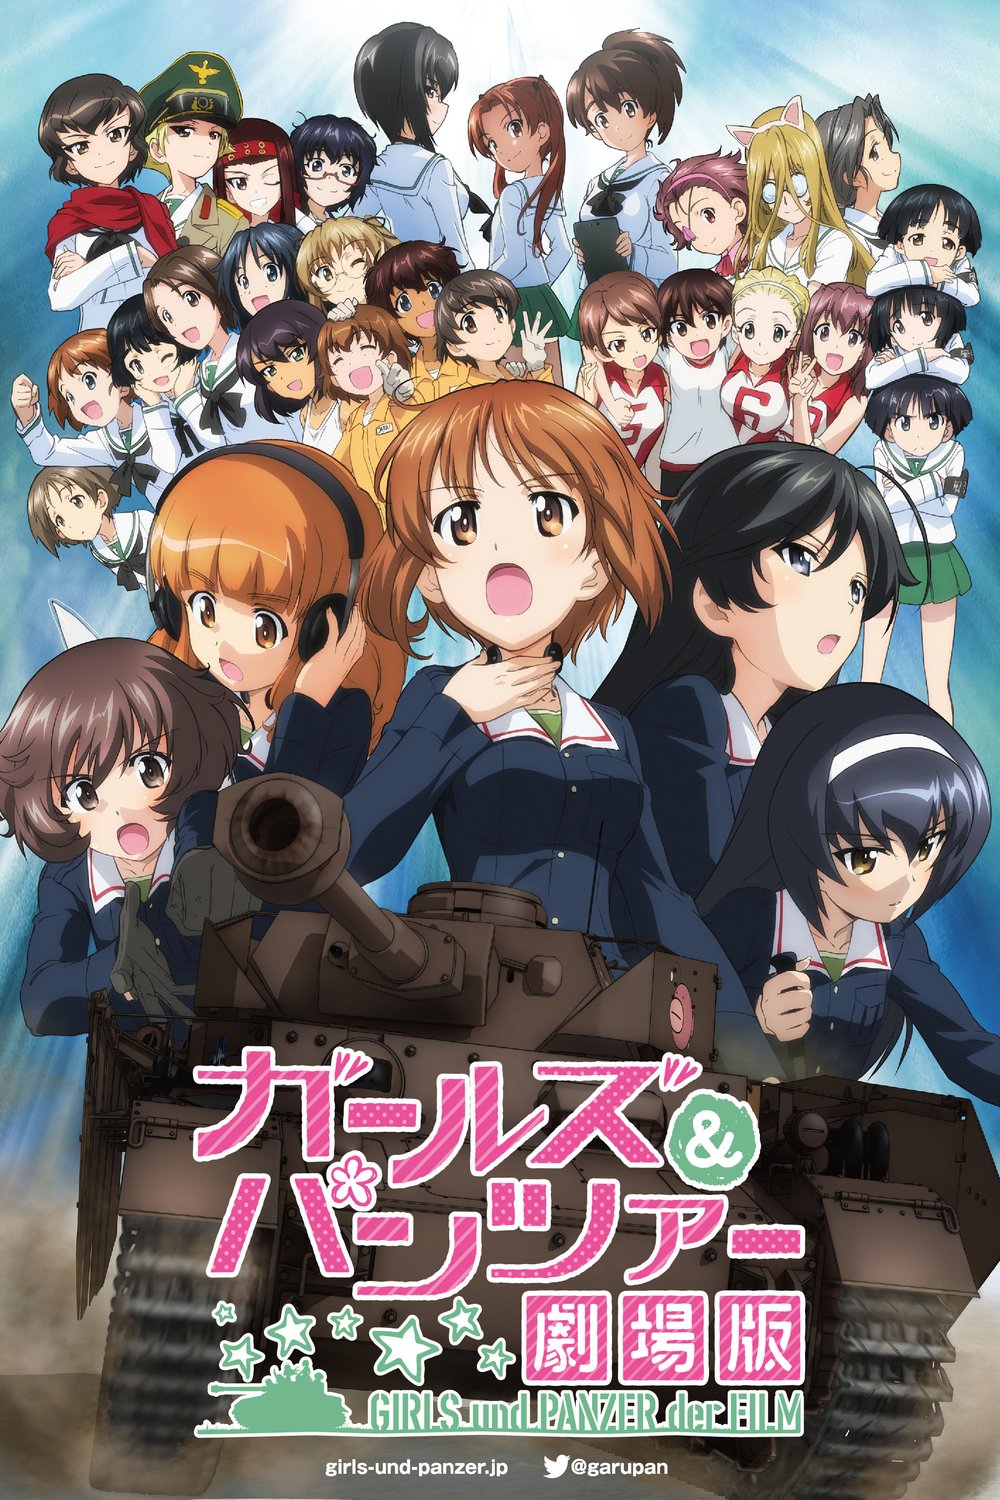 Japanese poster of the movie Girls und Panzer der Film